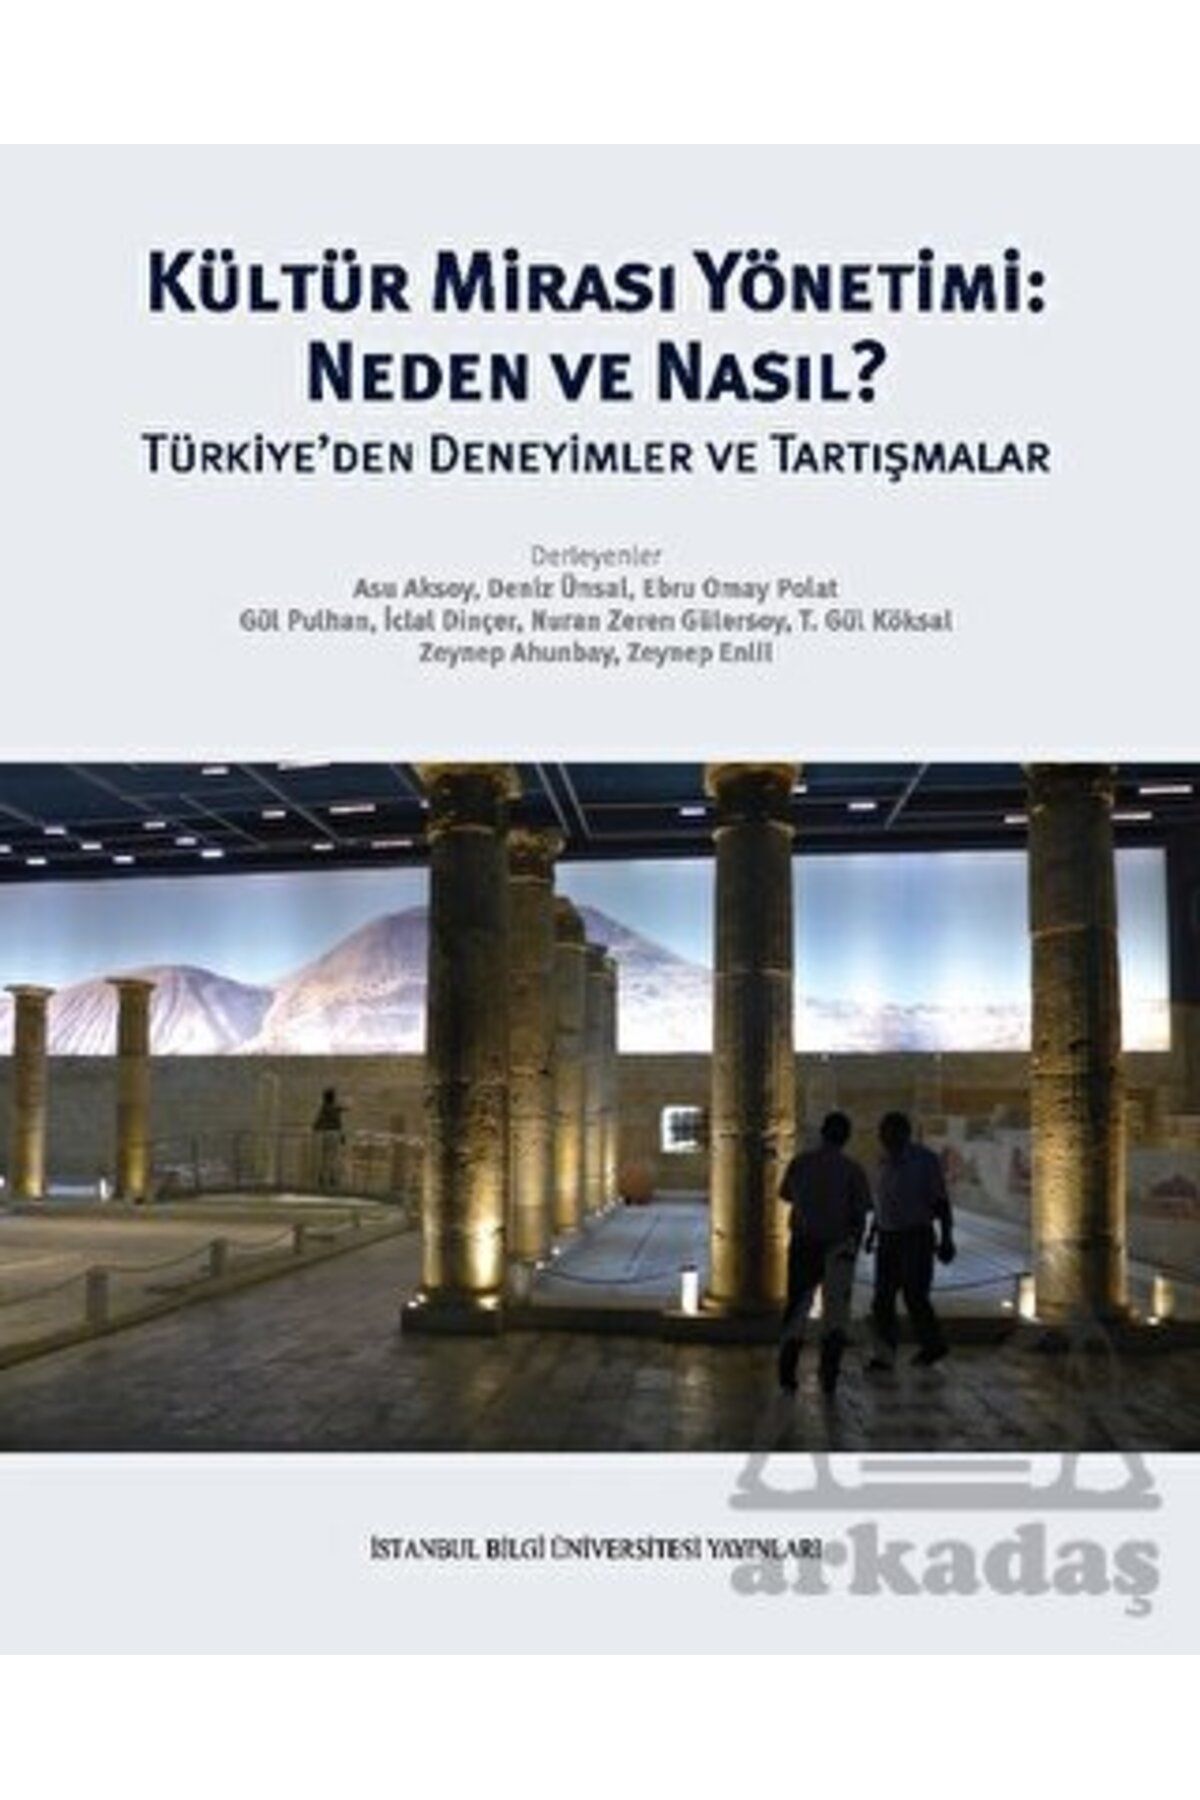 İstanbul Bilgi Üniversitesi Yayınları Kültür Mirası Yönetimi: Neden Ve Nasıl?